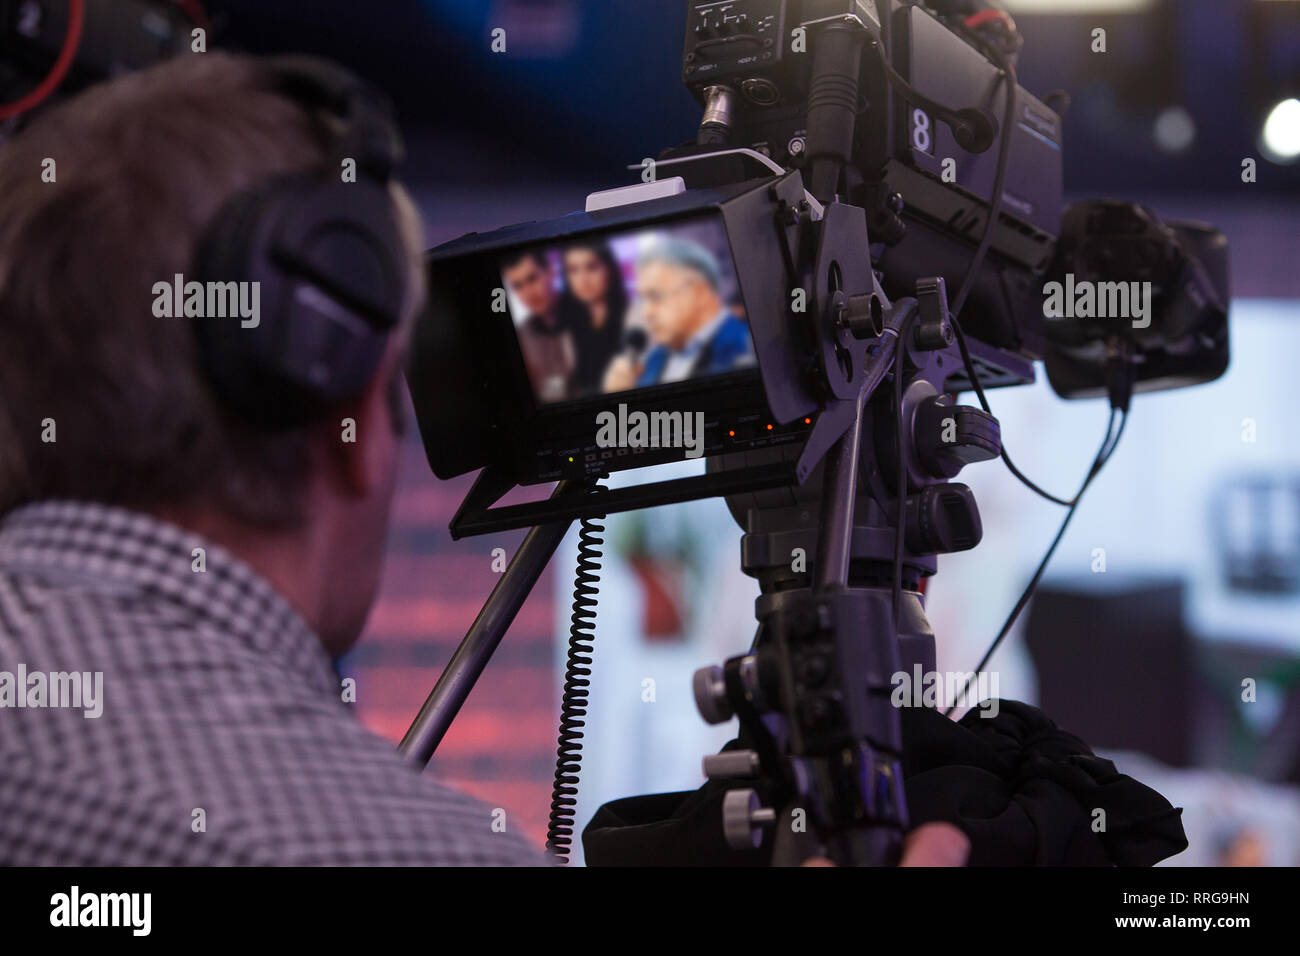 Vidéographe tournage d'un film ou d'émission de télévision dans un studio avec un appareil photo professionnel Banque D'Images